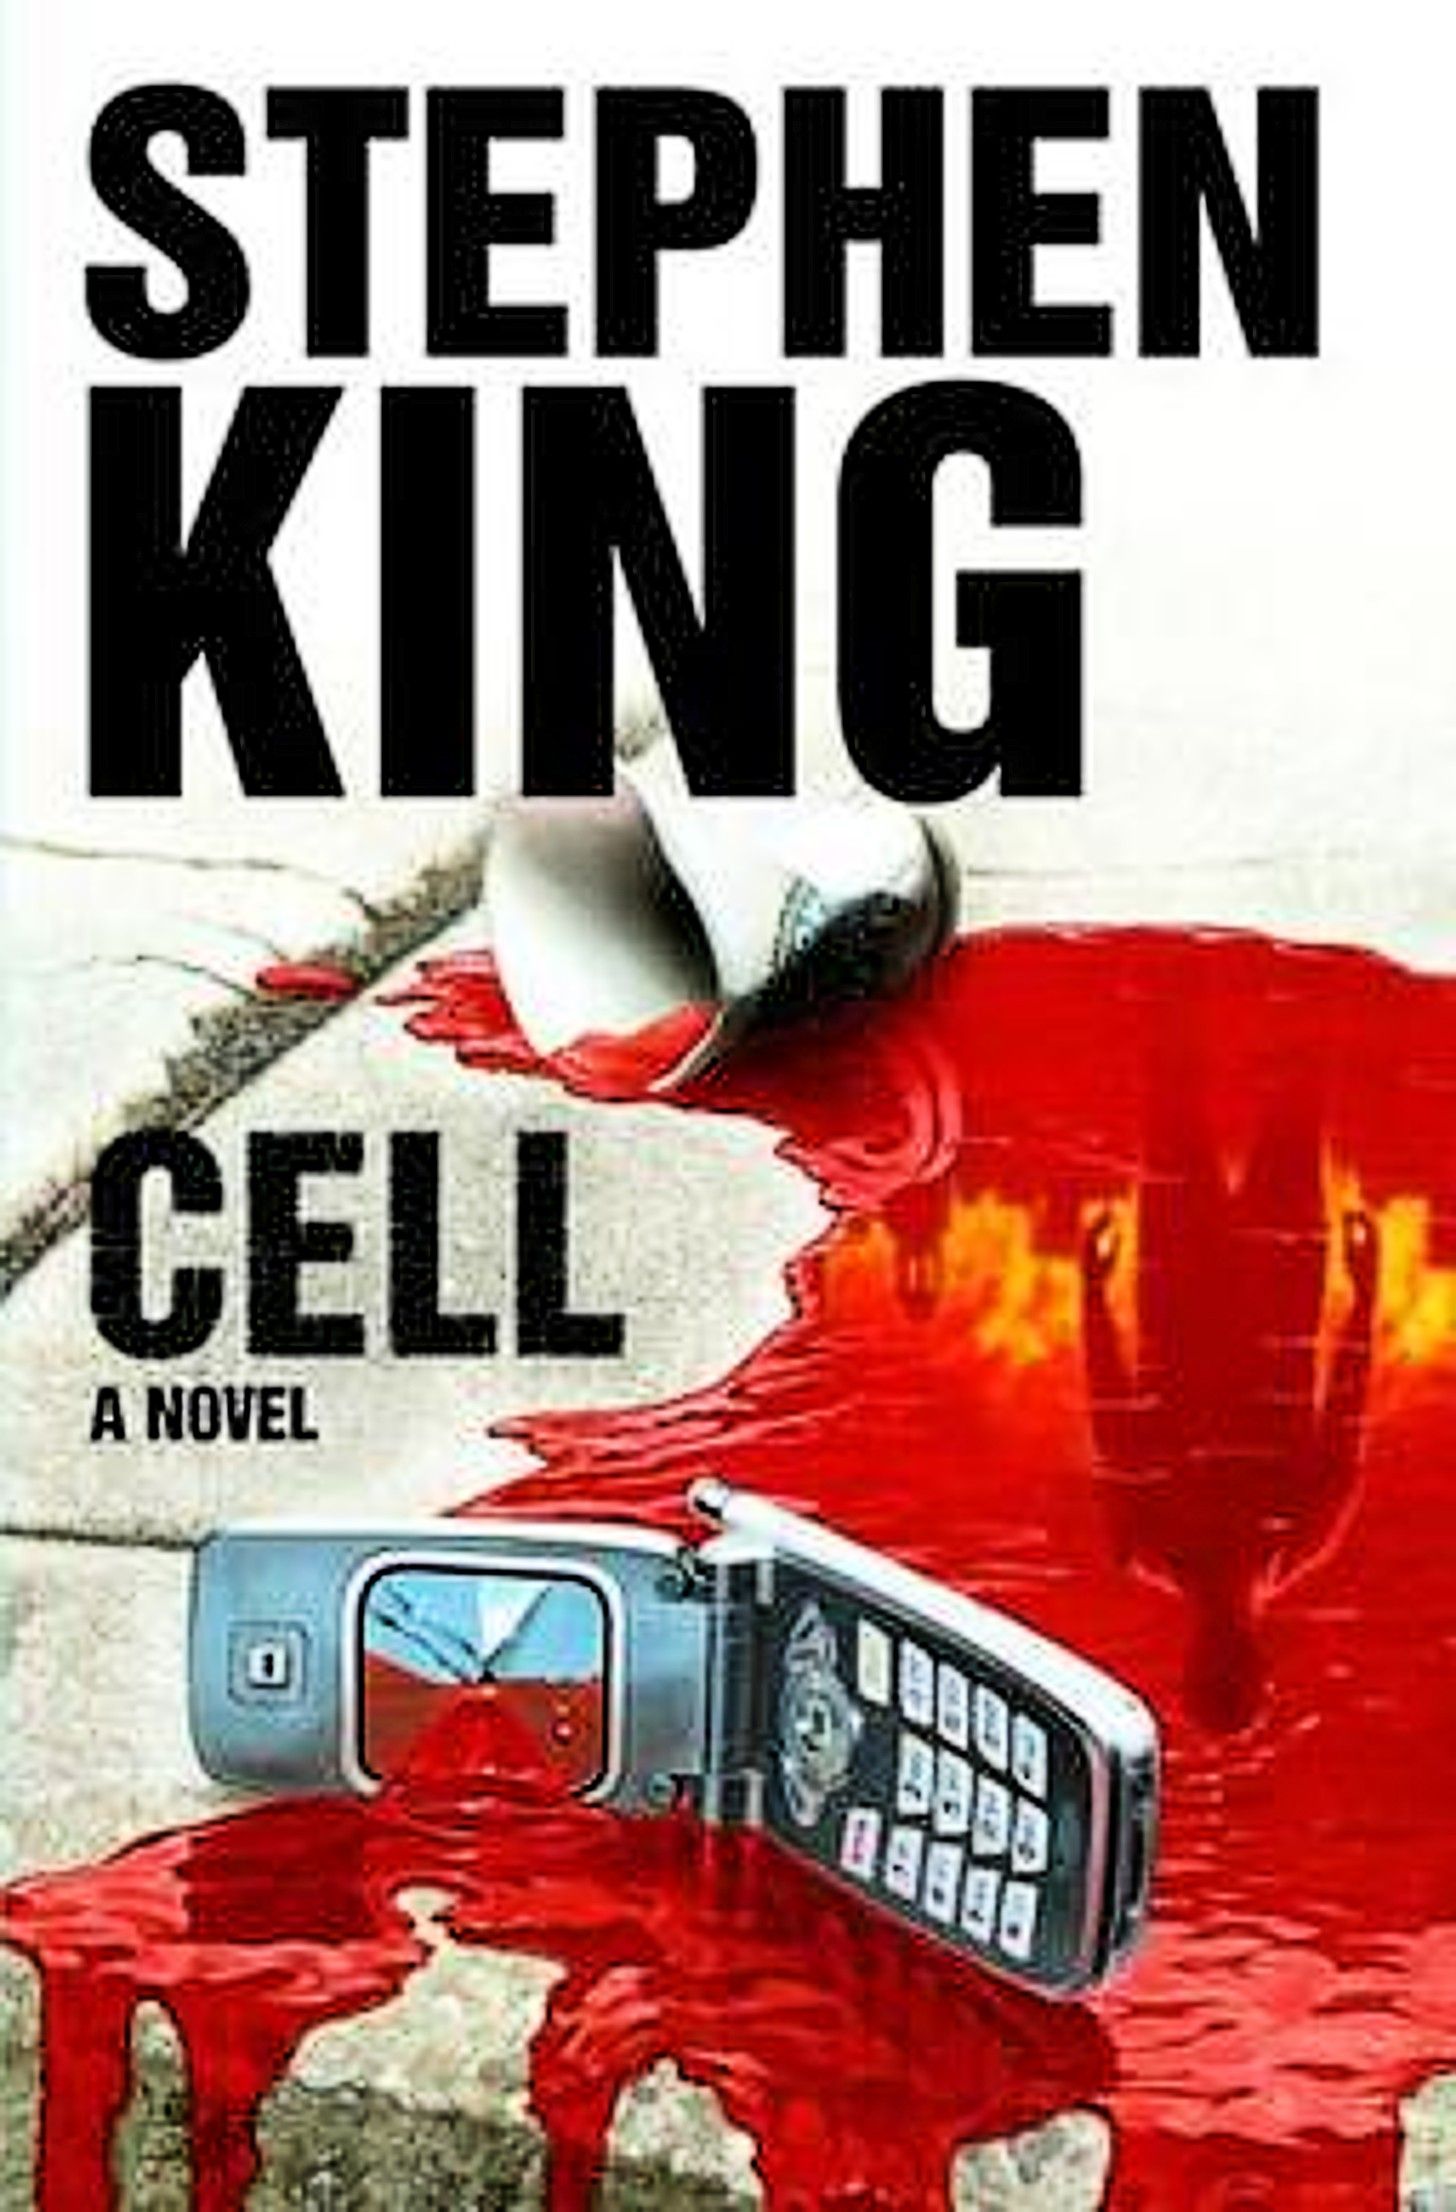 capa do livro CELL, de Stephen King, apresentando um telefone celular com a tela quebrada em uma poça de sangue.